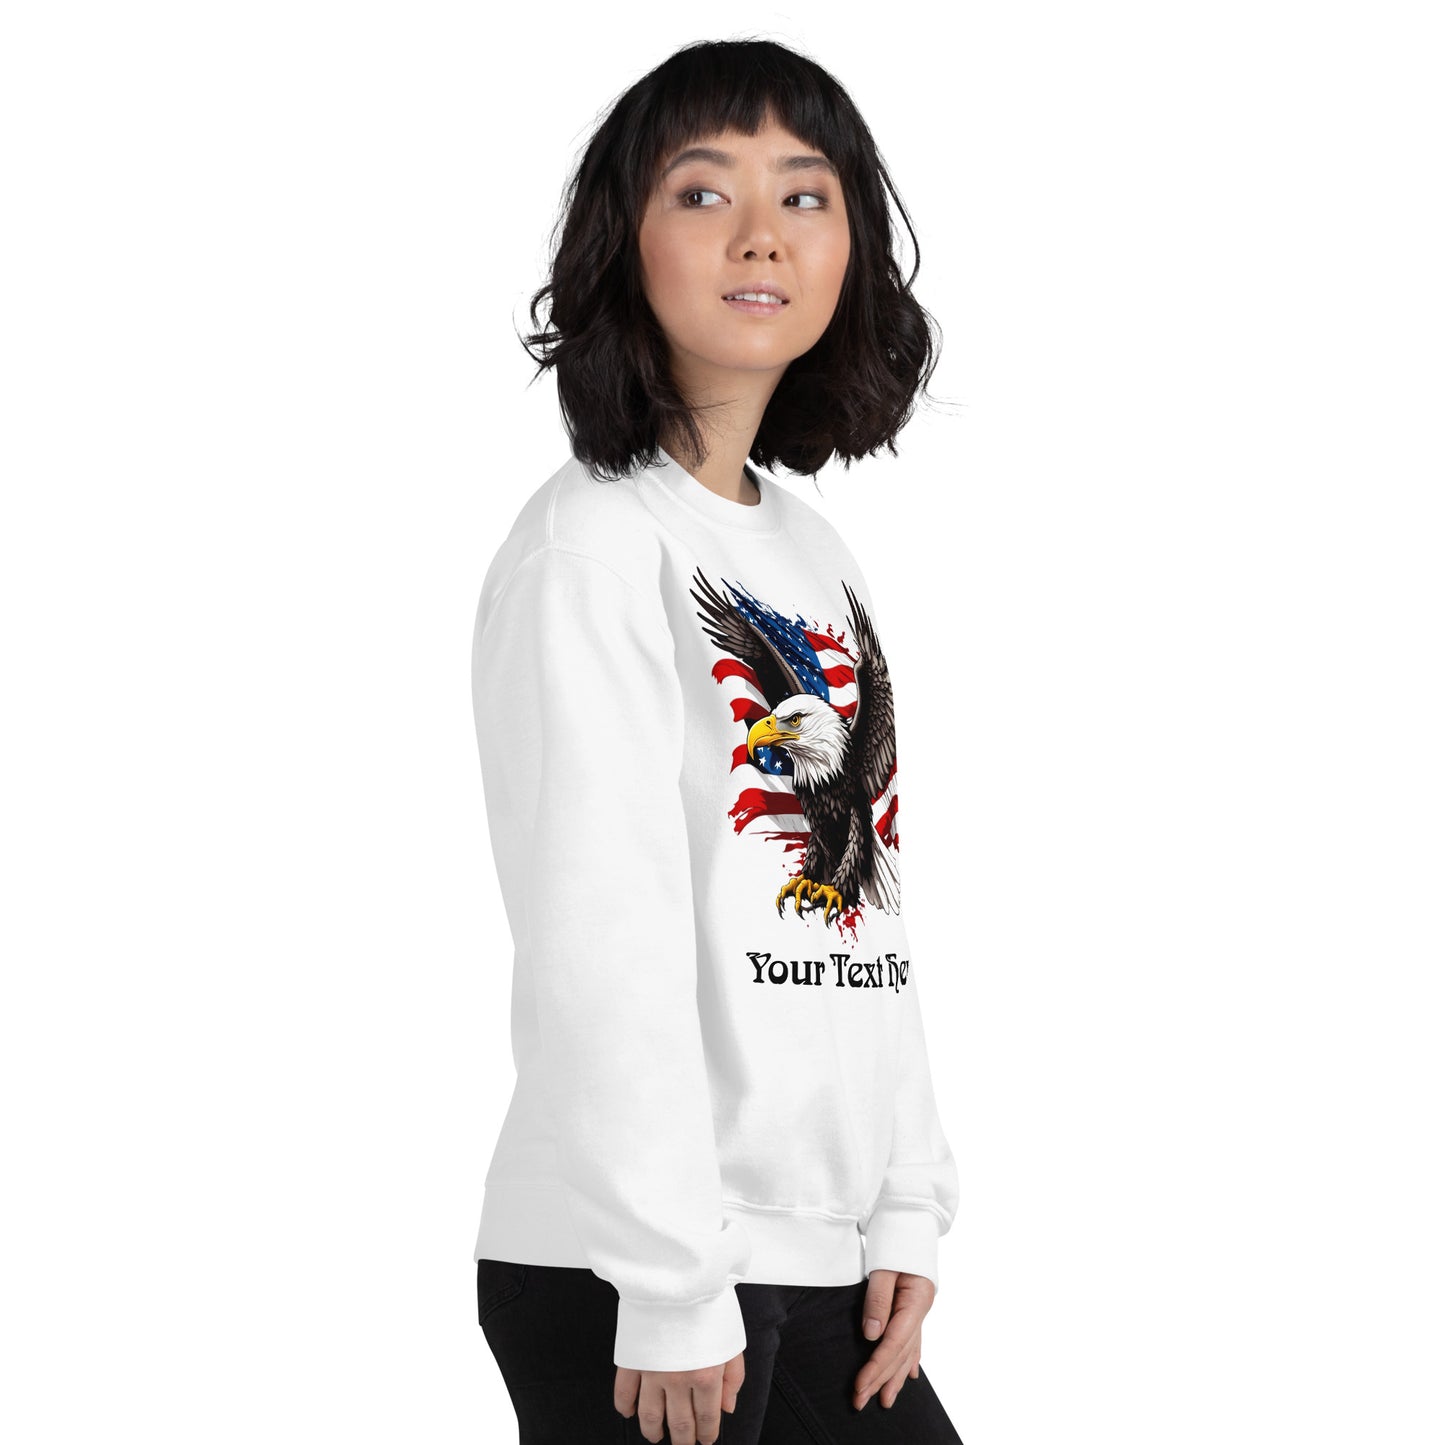 Customizable Unisex Sweatshirt With Flying Eagle Print